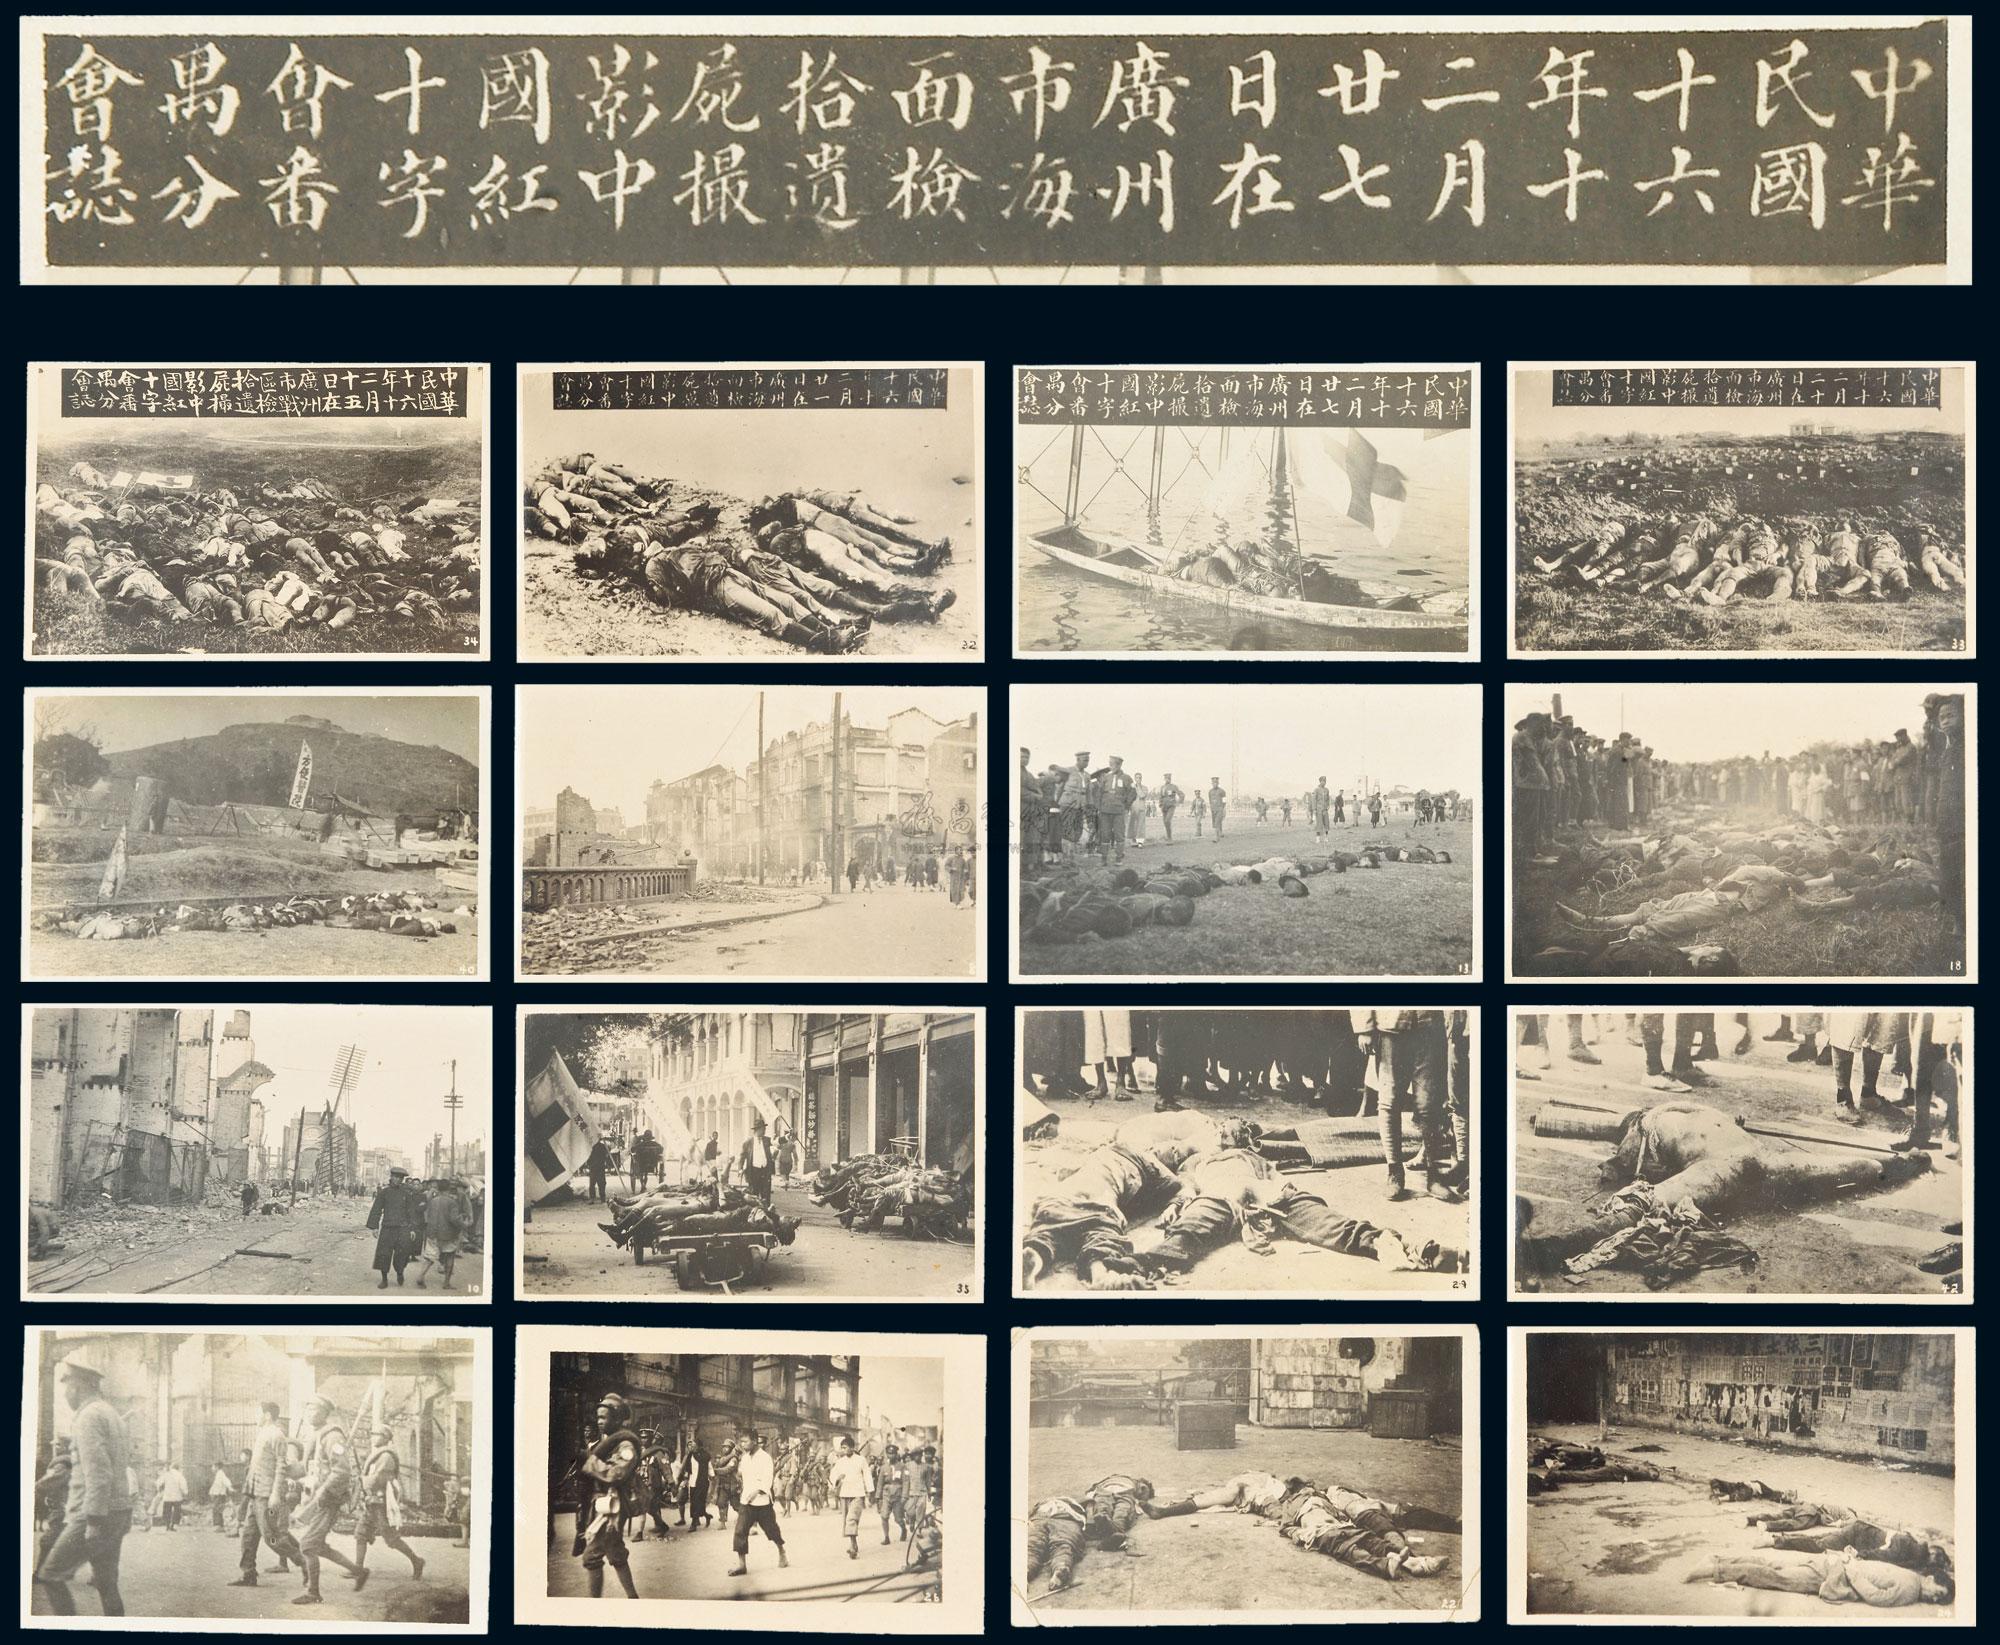 3772 ppc 1927年广州起义照片版明信片一组四十二枚